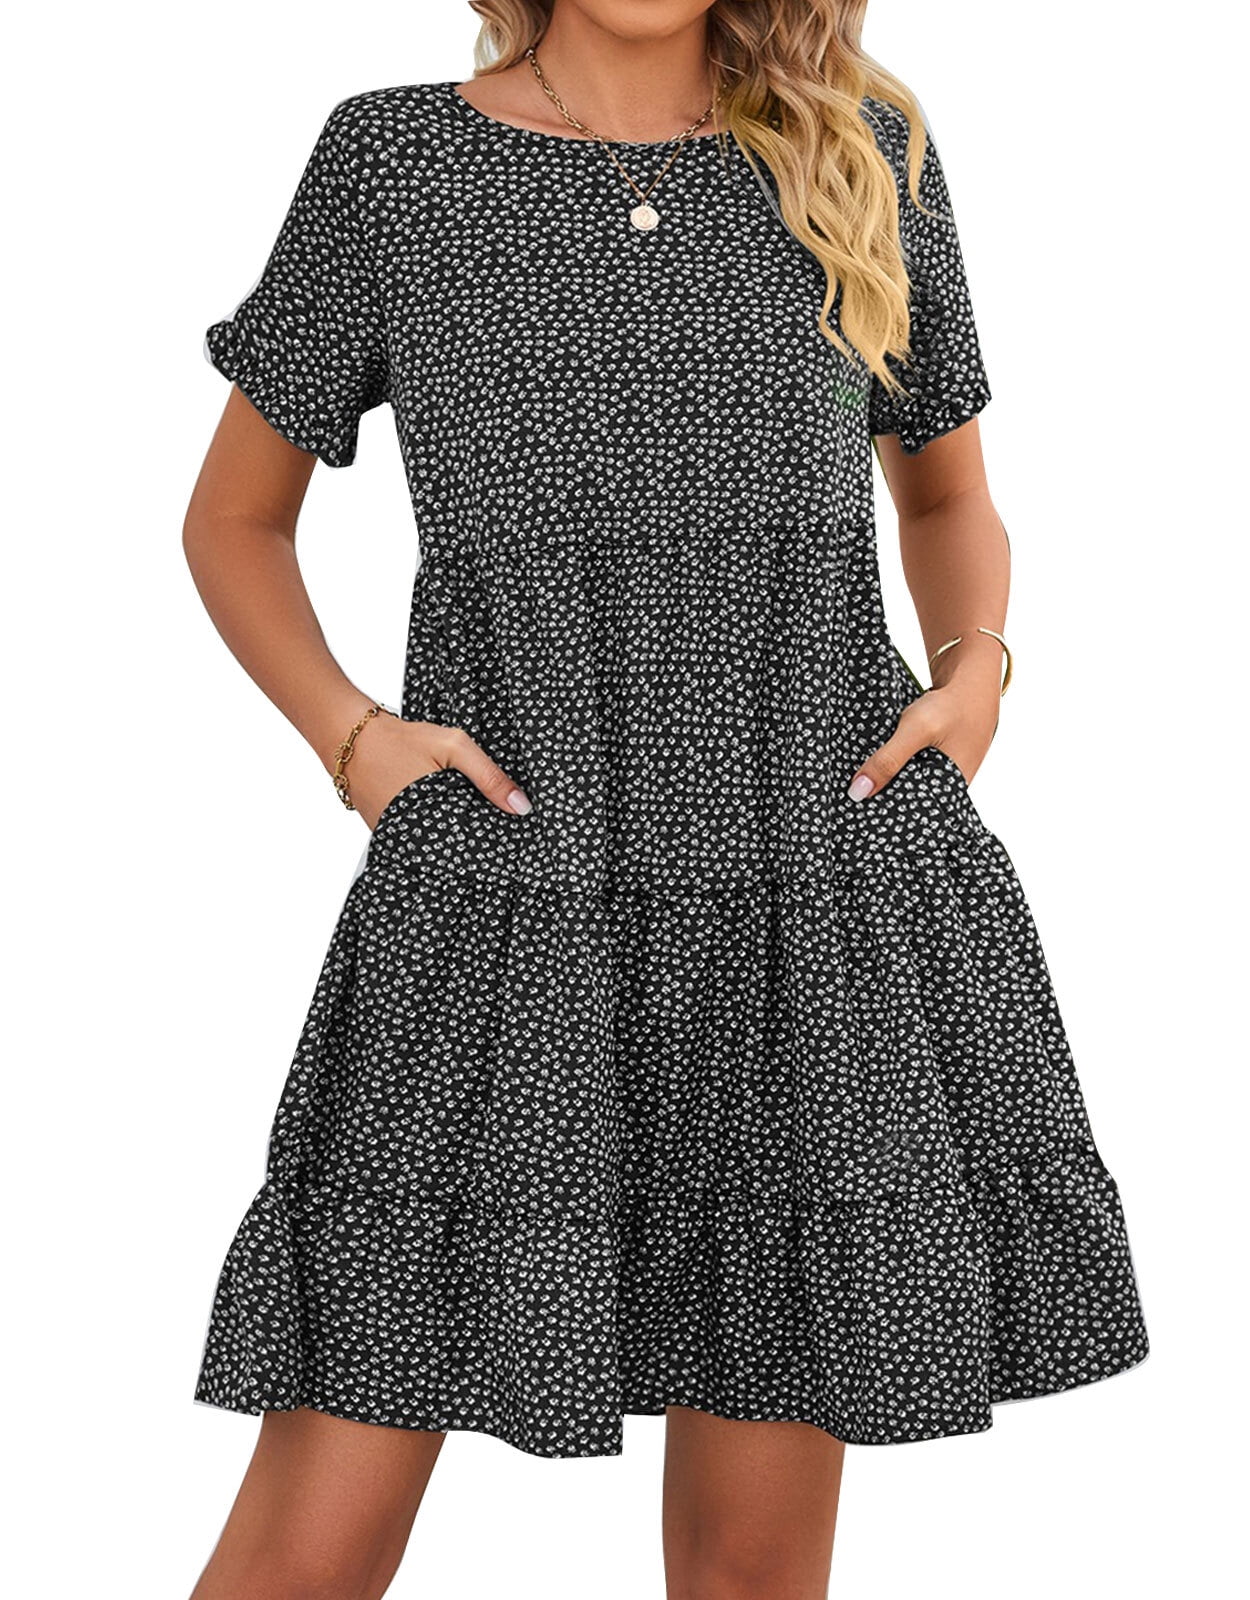 Summer Dress for Women Ruffled Short Sleeve Polka Dot Print Sundresses ...